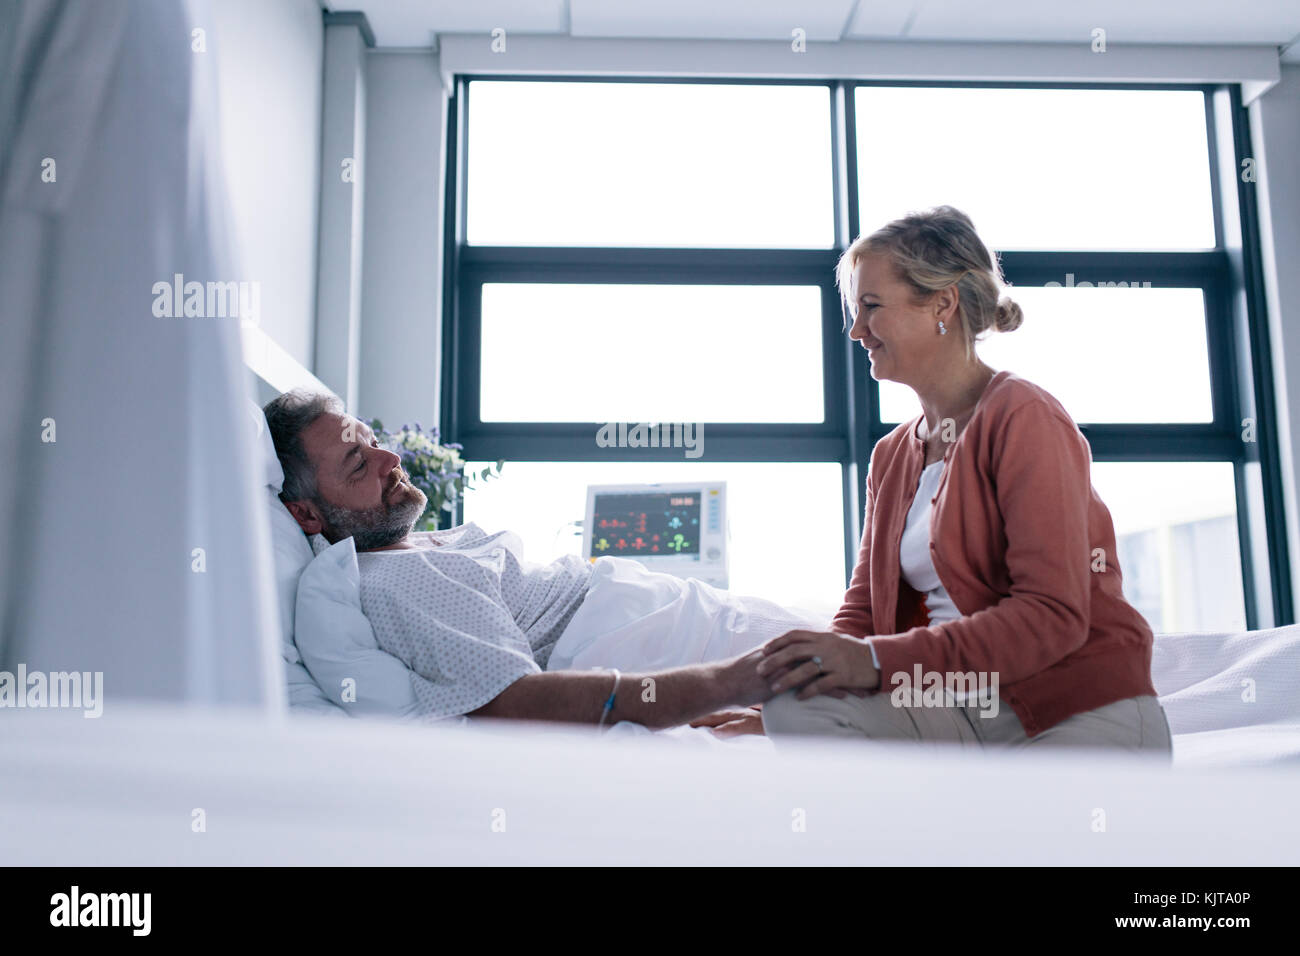 Frau, Mann im Krankenhaus. Weibliche Gespräch mit männlichen Patienten im Krankenhaus Bett lag. Stockfoto